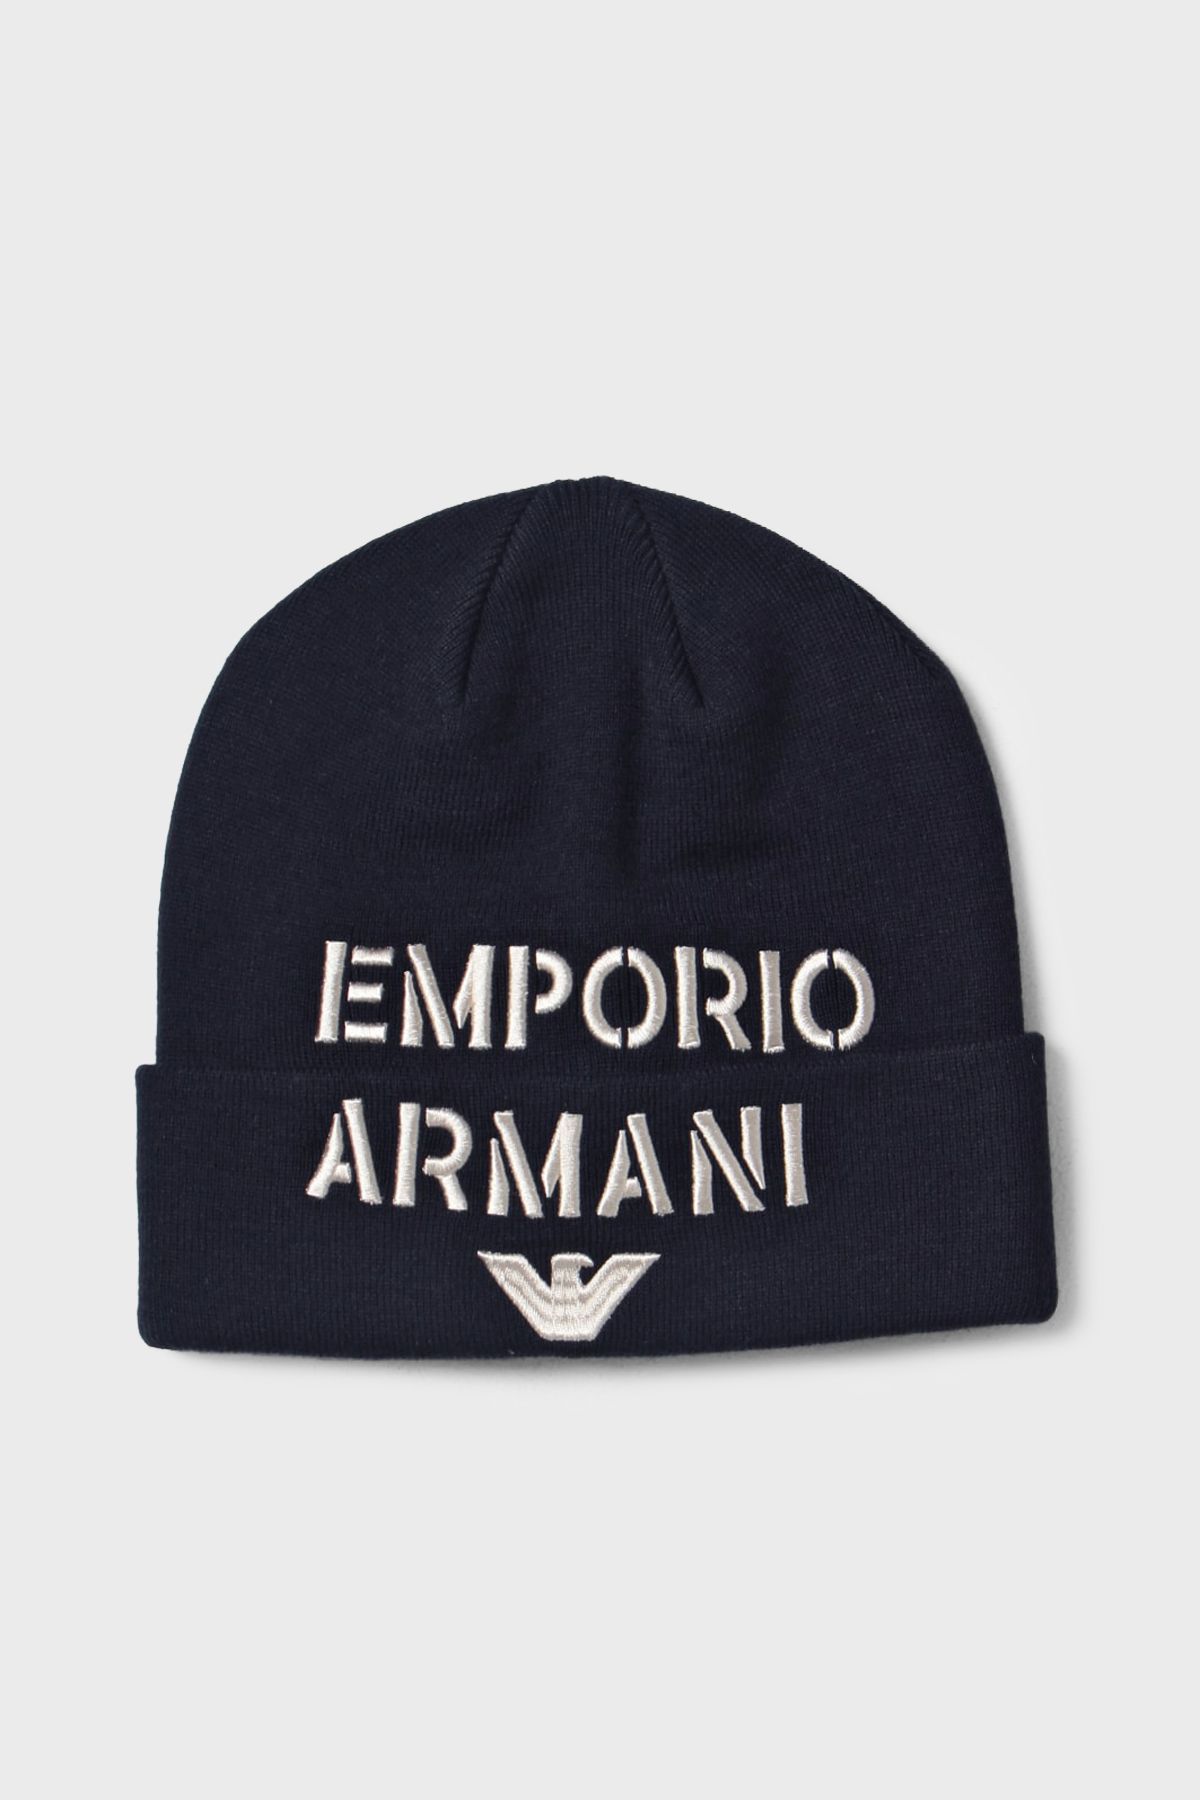 Emporio Armani Yünlü Nakışlı Logolu Bere Erkek BERE 627406 3F570 00035